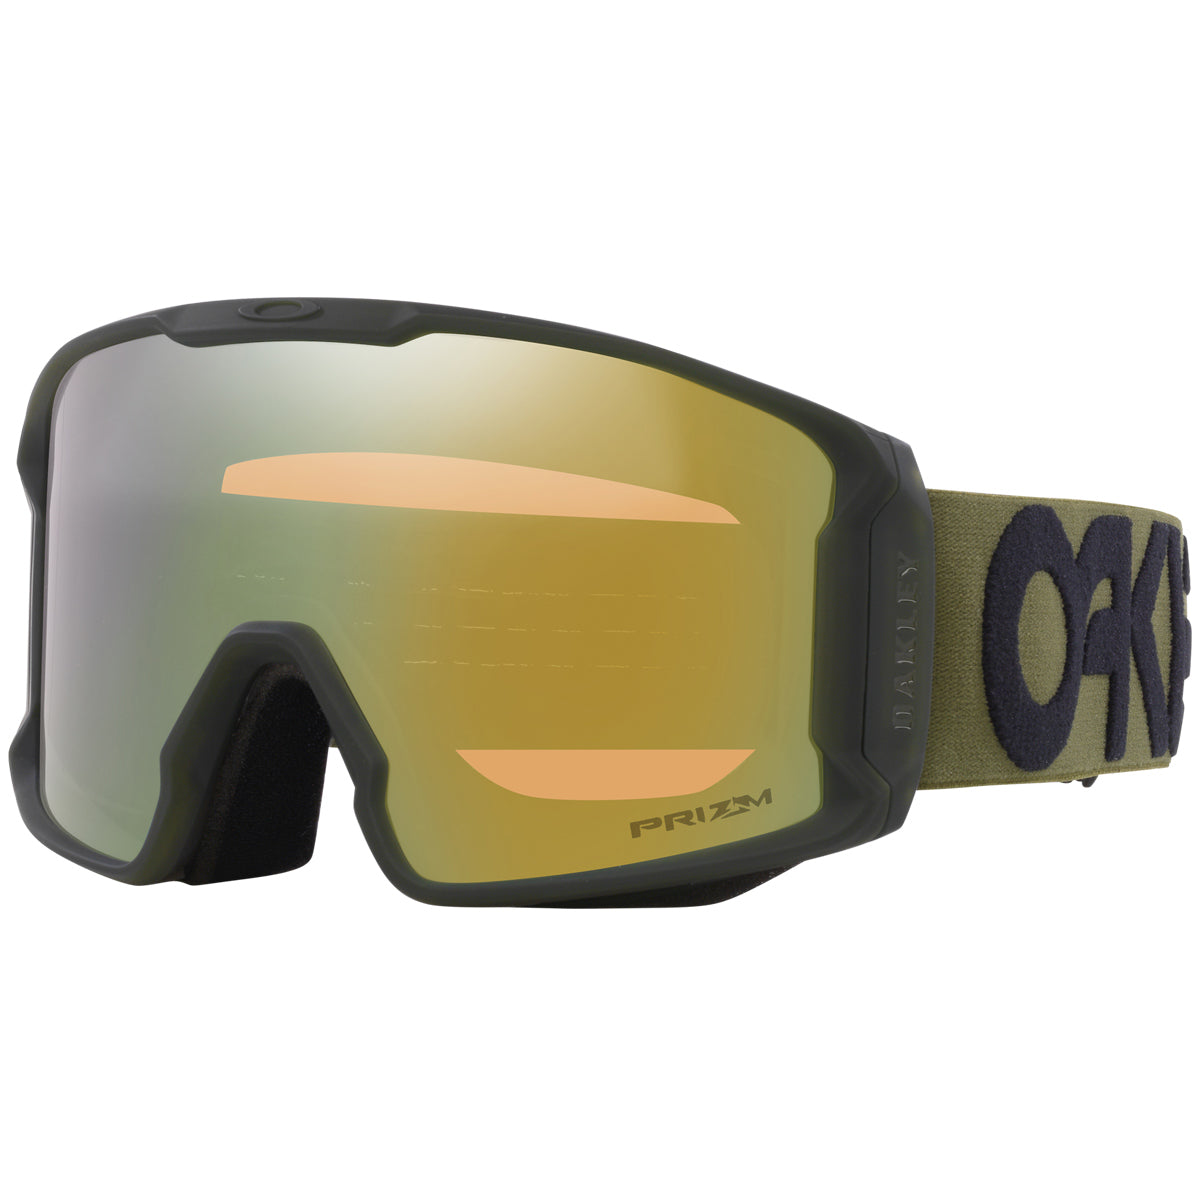 Oakley Line Miner Snowboard Goggles - Matte Dark Brush/Prizm Sage Gold Iridium image 1